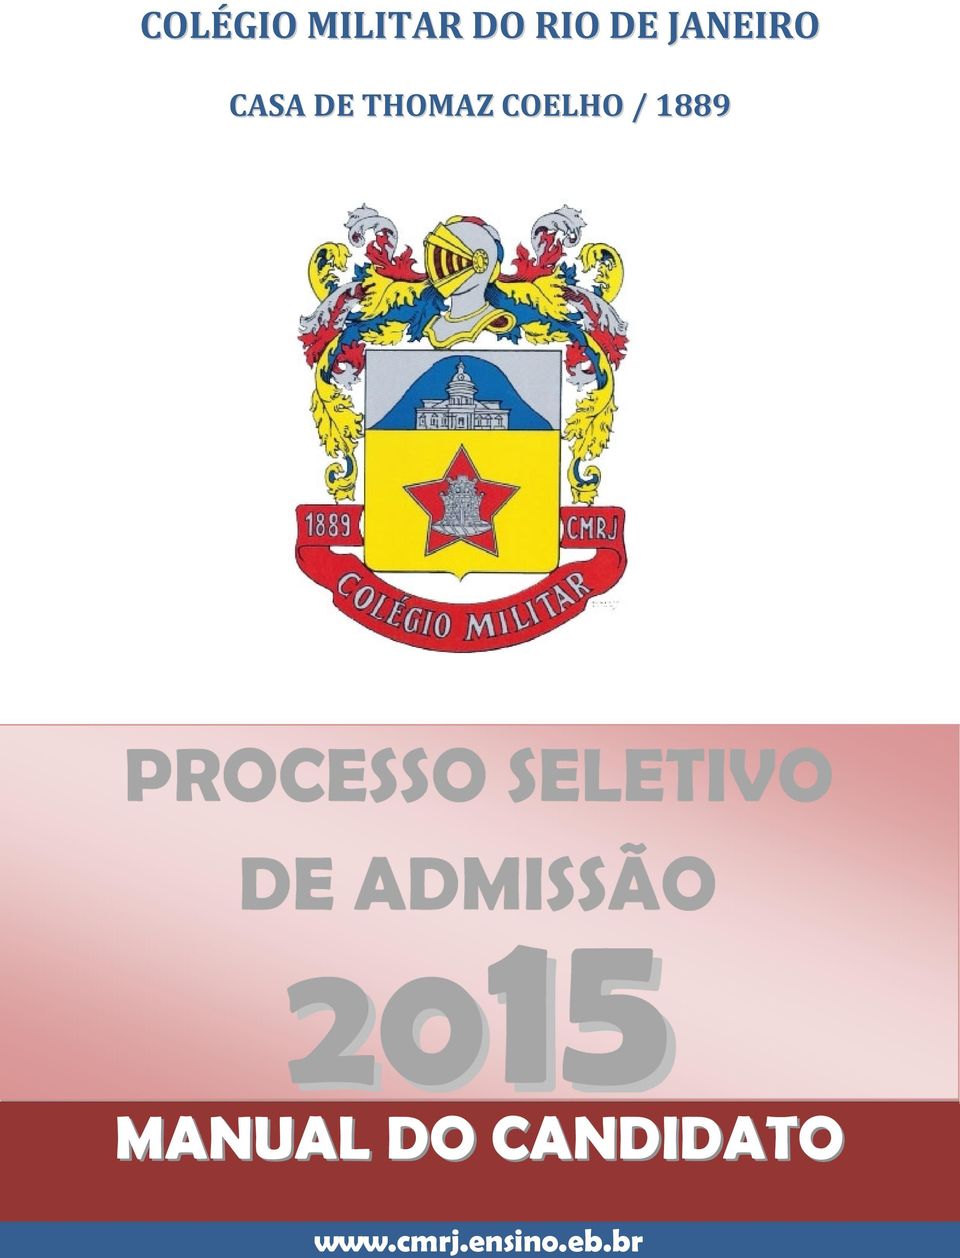 PROCESSO SELETIVO DE ADMISSÃO 2015